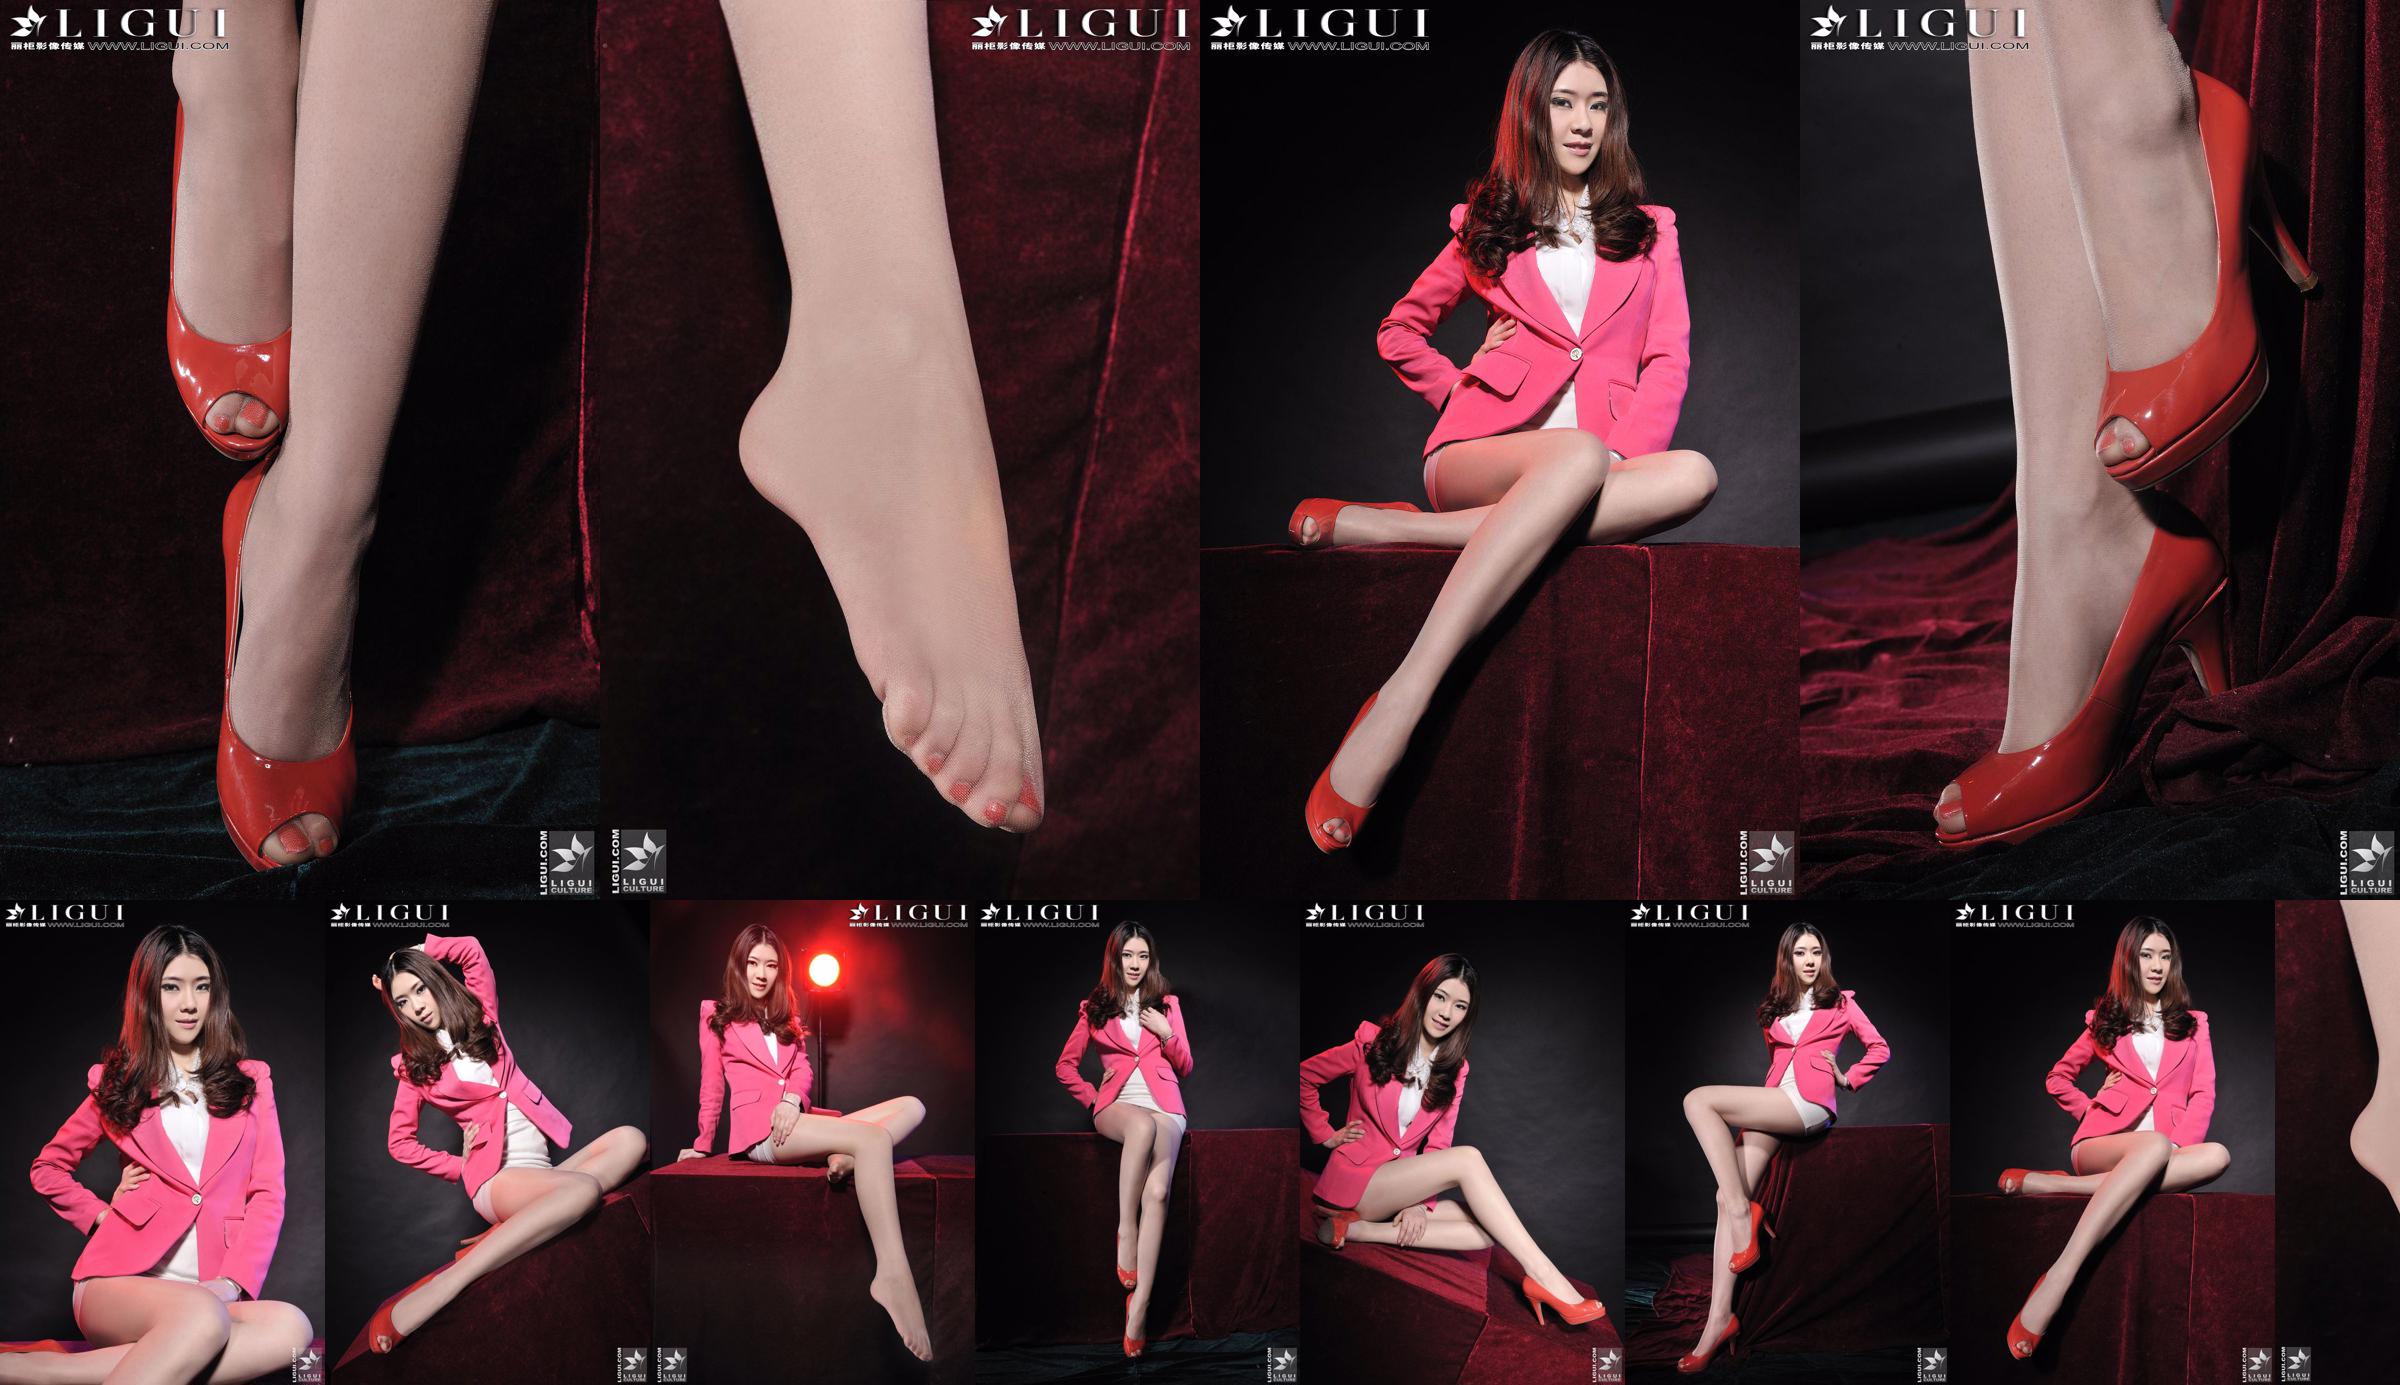 Người mẫu Chenchen "Cô gái đi giày cao gót đỏ" [丽 柜 LiGui] Hình ảnh đôi chân ngọc và đôi chân xinh đẹp No.277a87 Trang 1